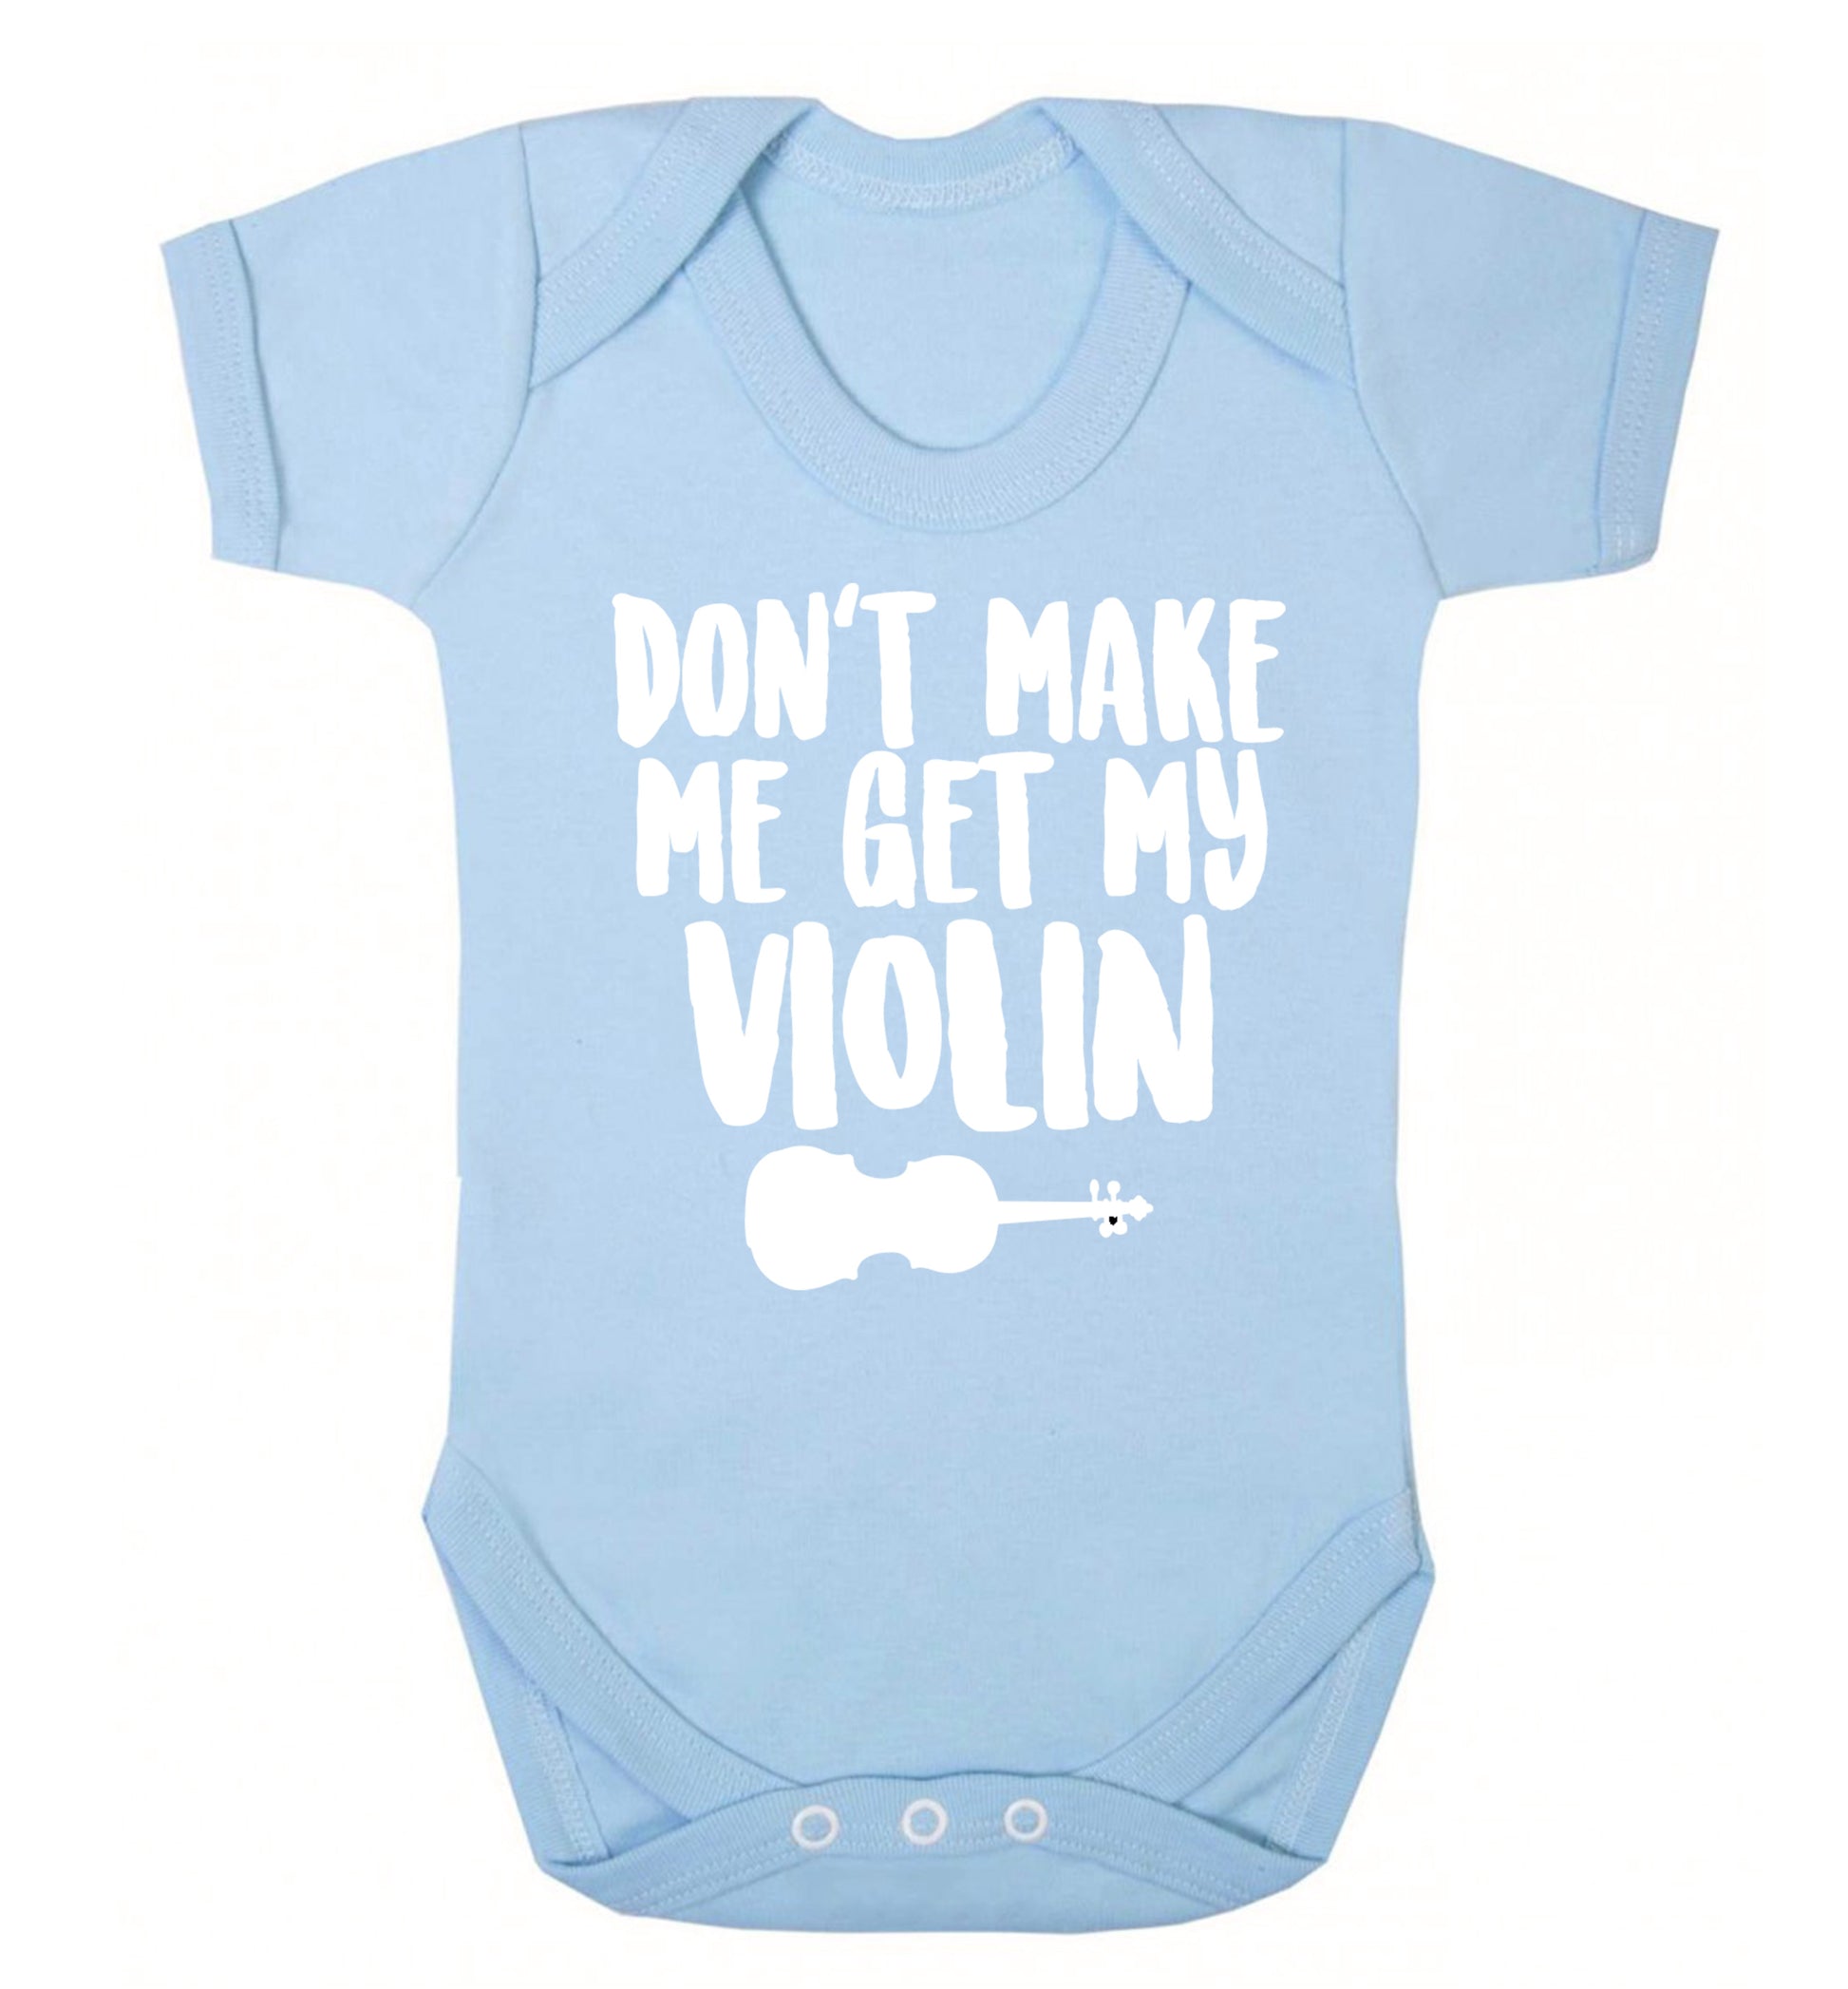 Don't make me get my violin Baby Vest pale blue 18-24 months